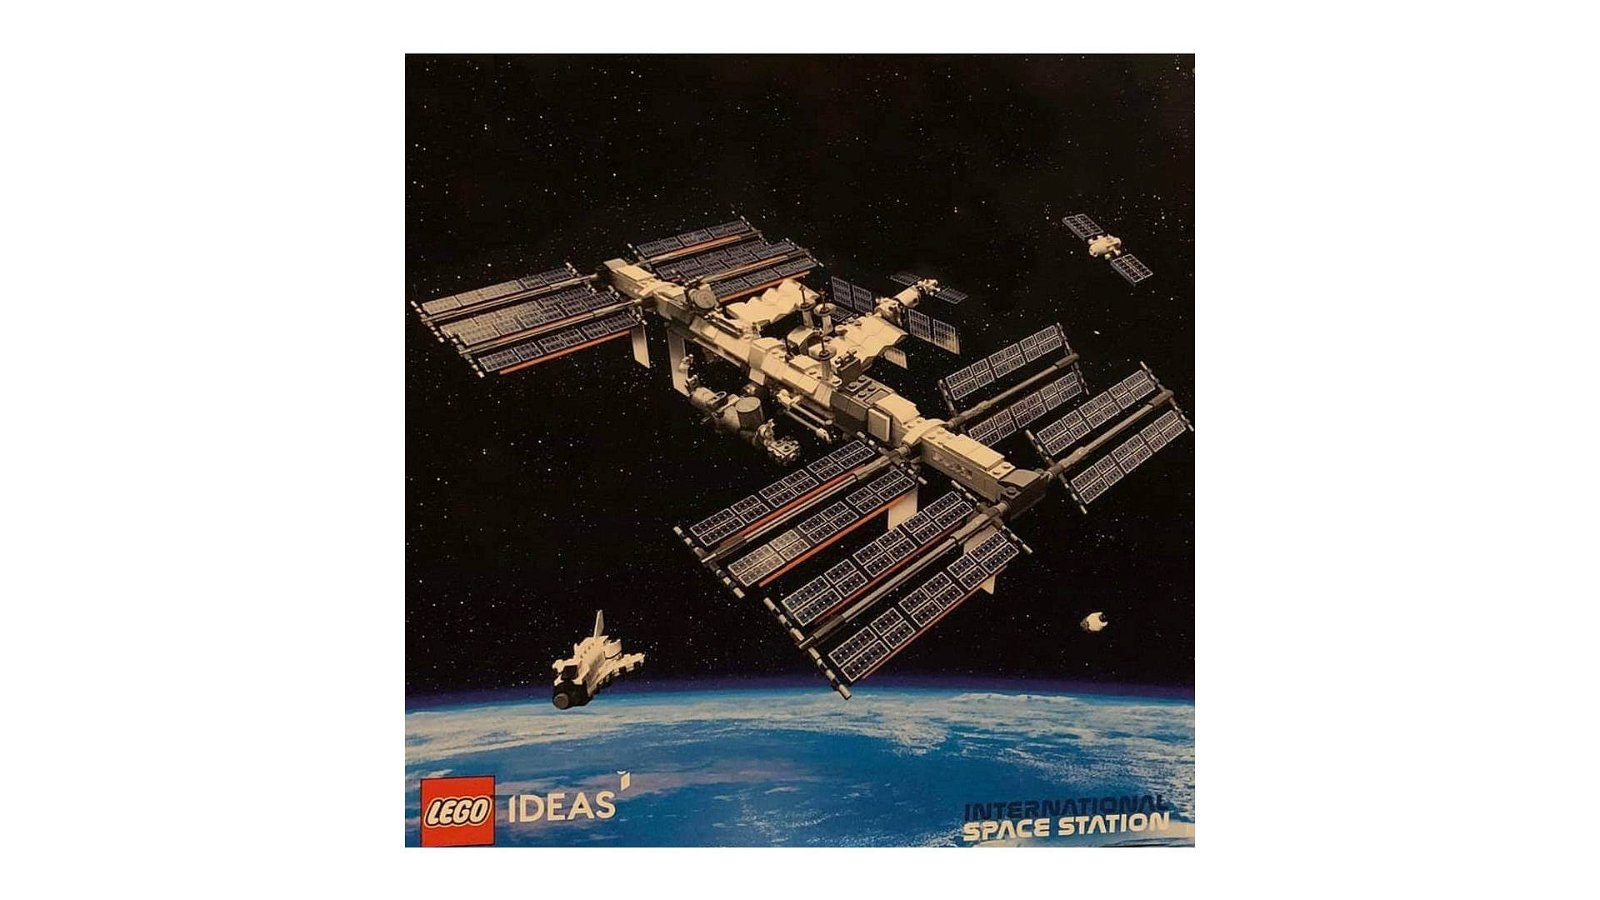 Immagine di LEGO: le immagini del nuovo set "International Space Station"